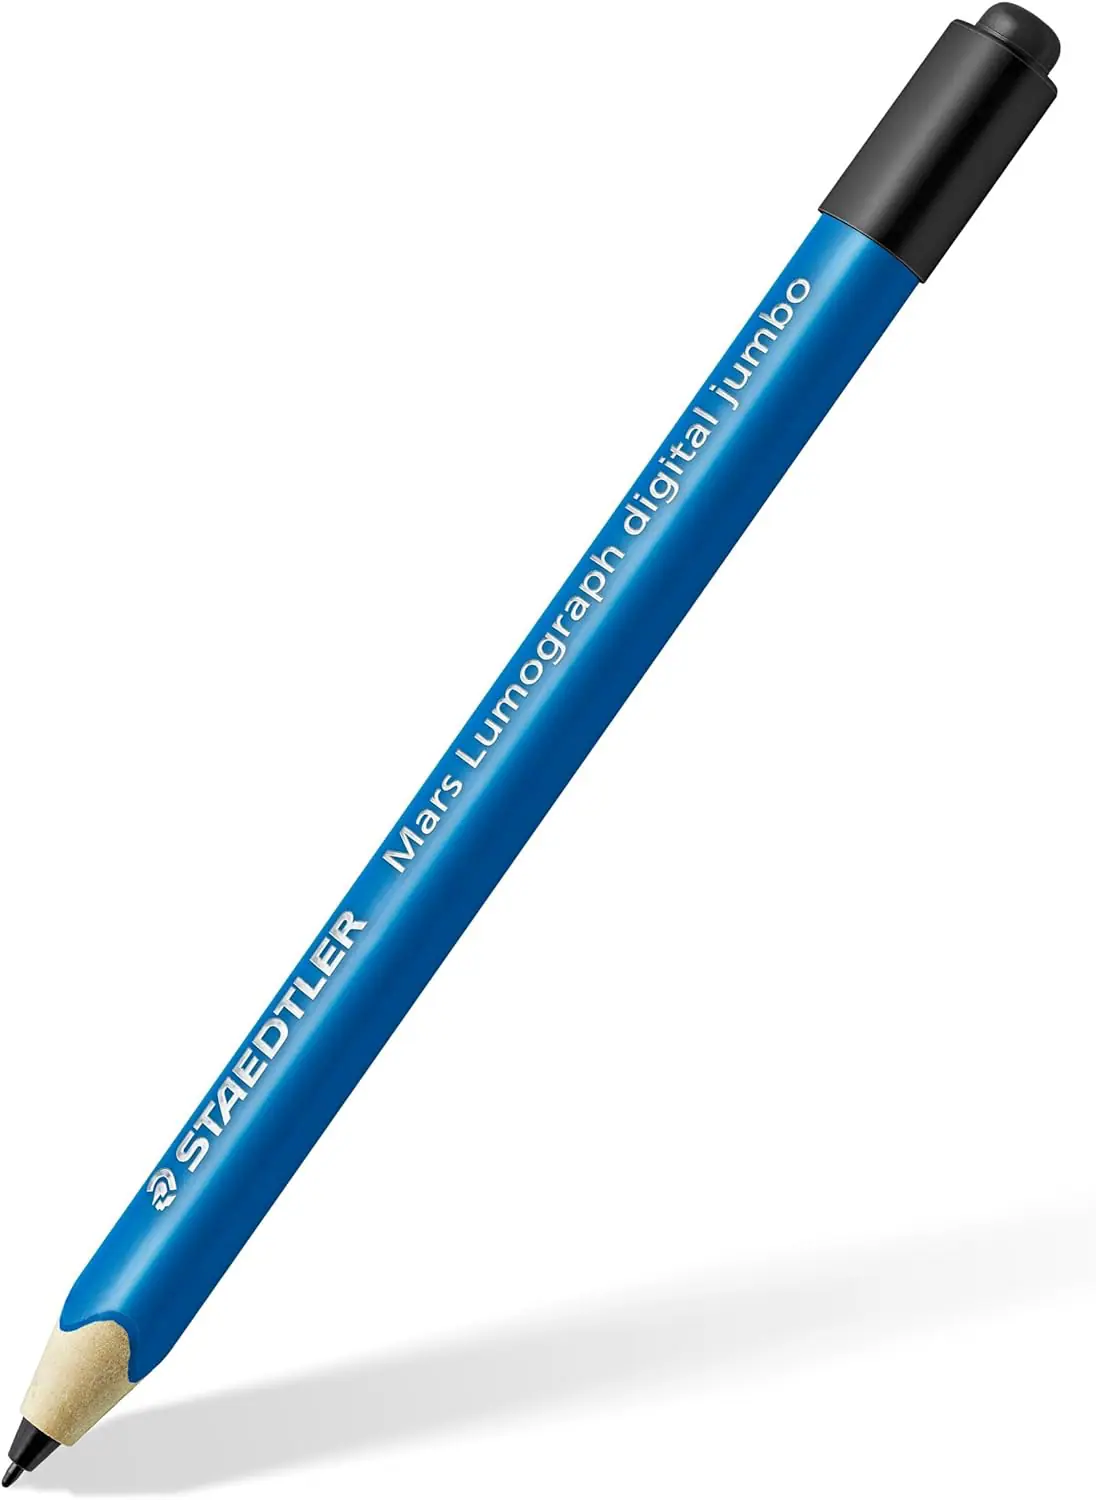 Voertman's: Staedtler Mars Lumograph Pencils